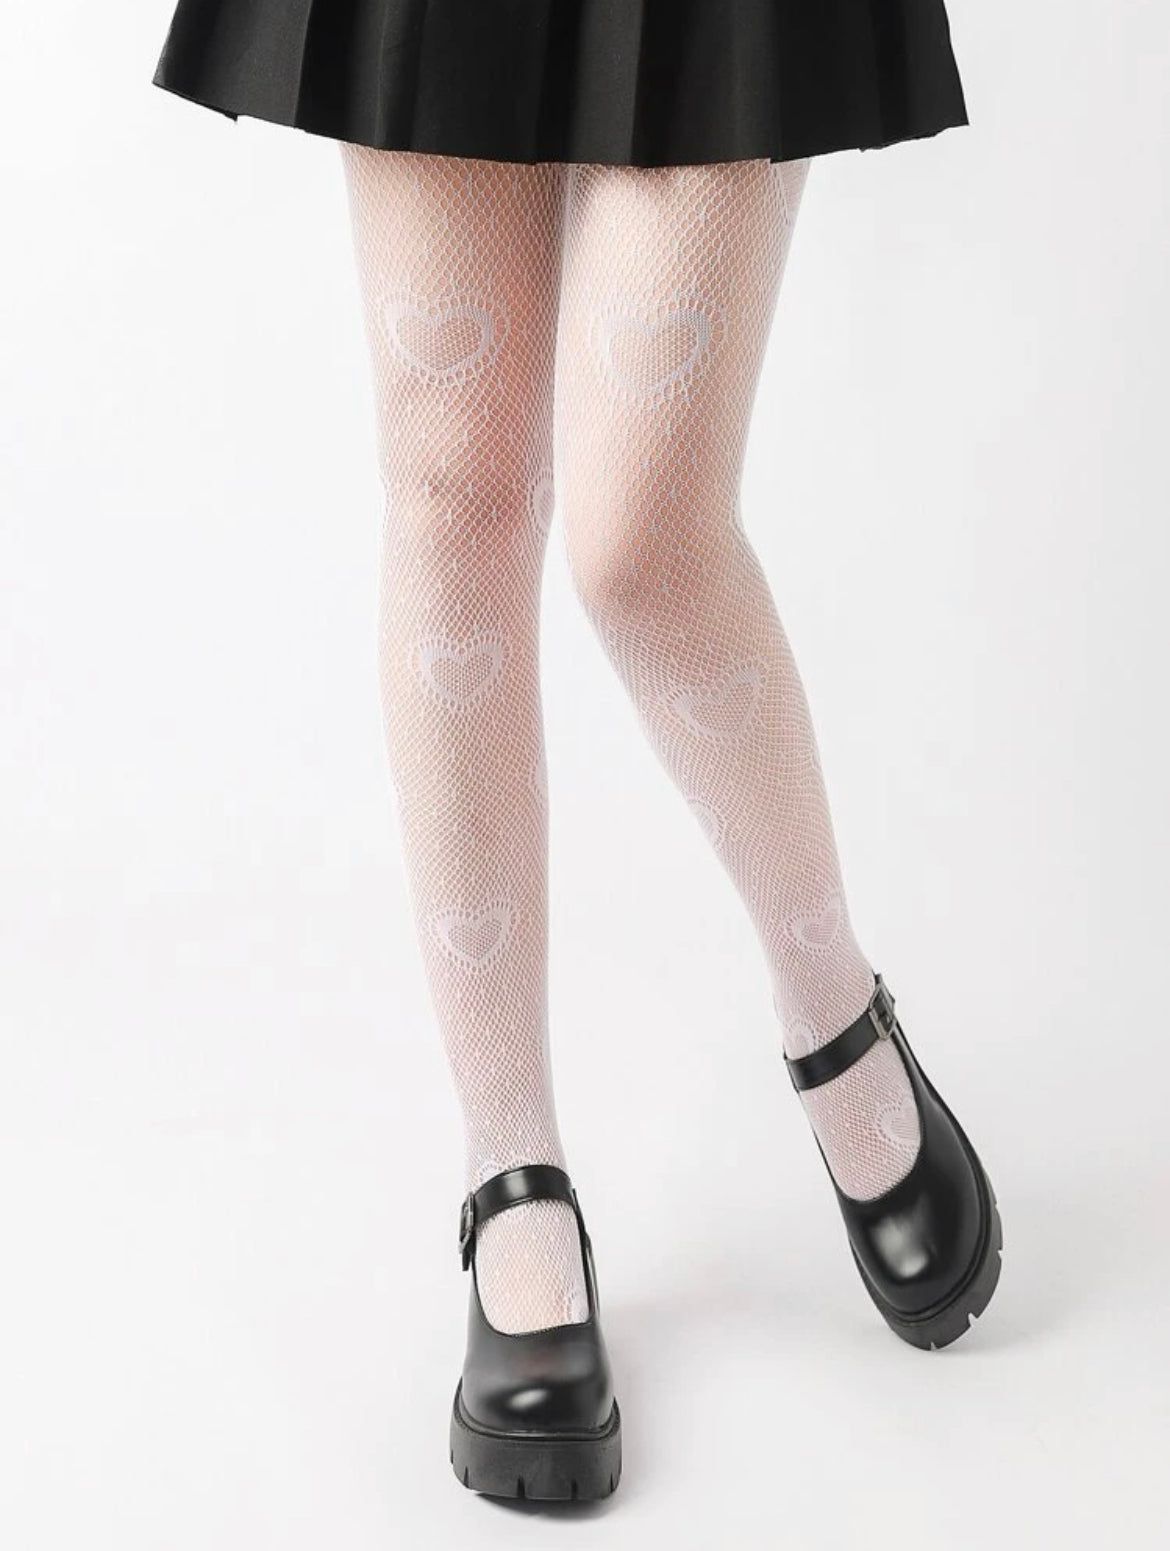 Fishnet heart stockings/heart leggings in black or white – Steelo and Sass